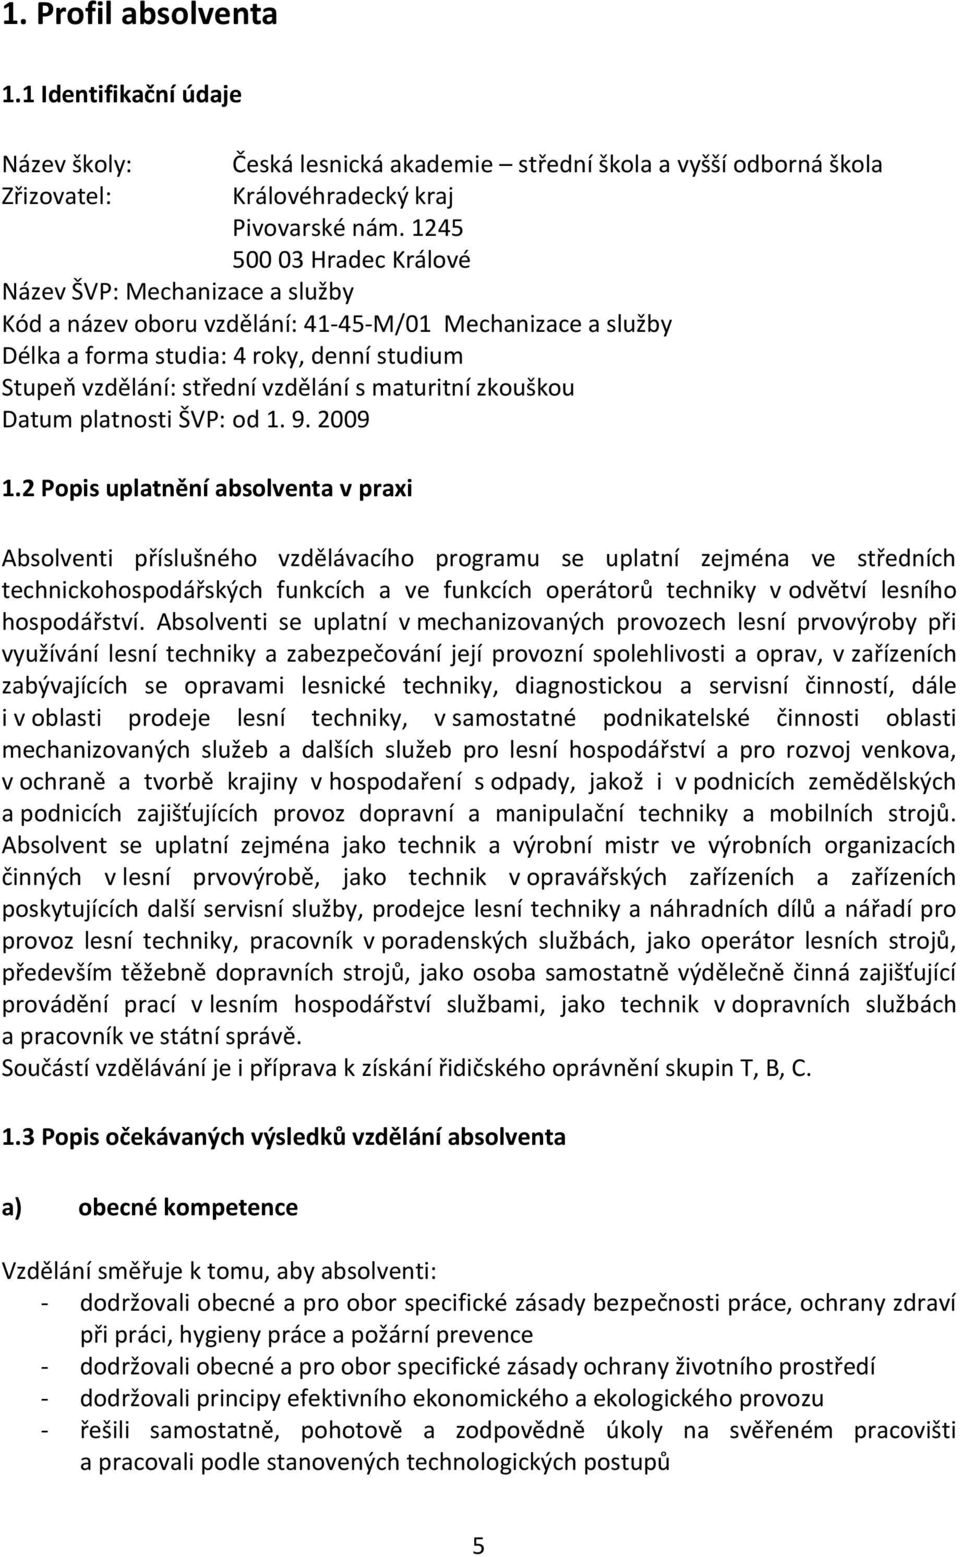 maturitní zkouškou Datum platnosti ŠVP: od 1. 9. 2009 1.